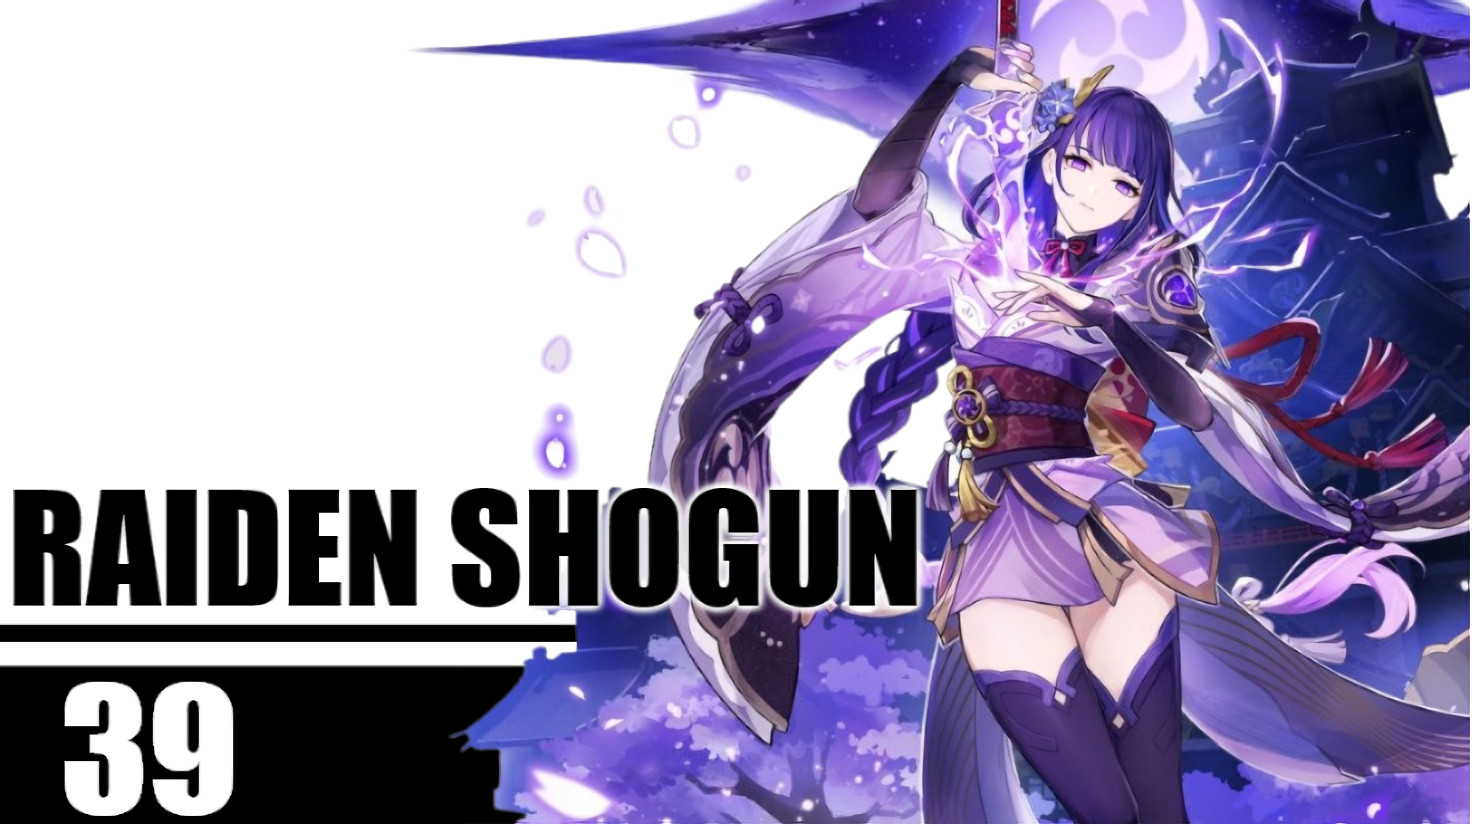 Raiden shogun voice lines